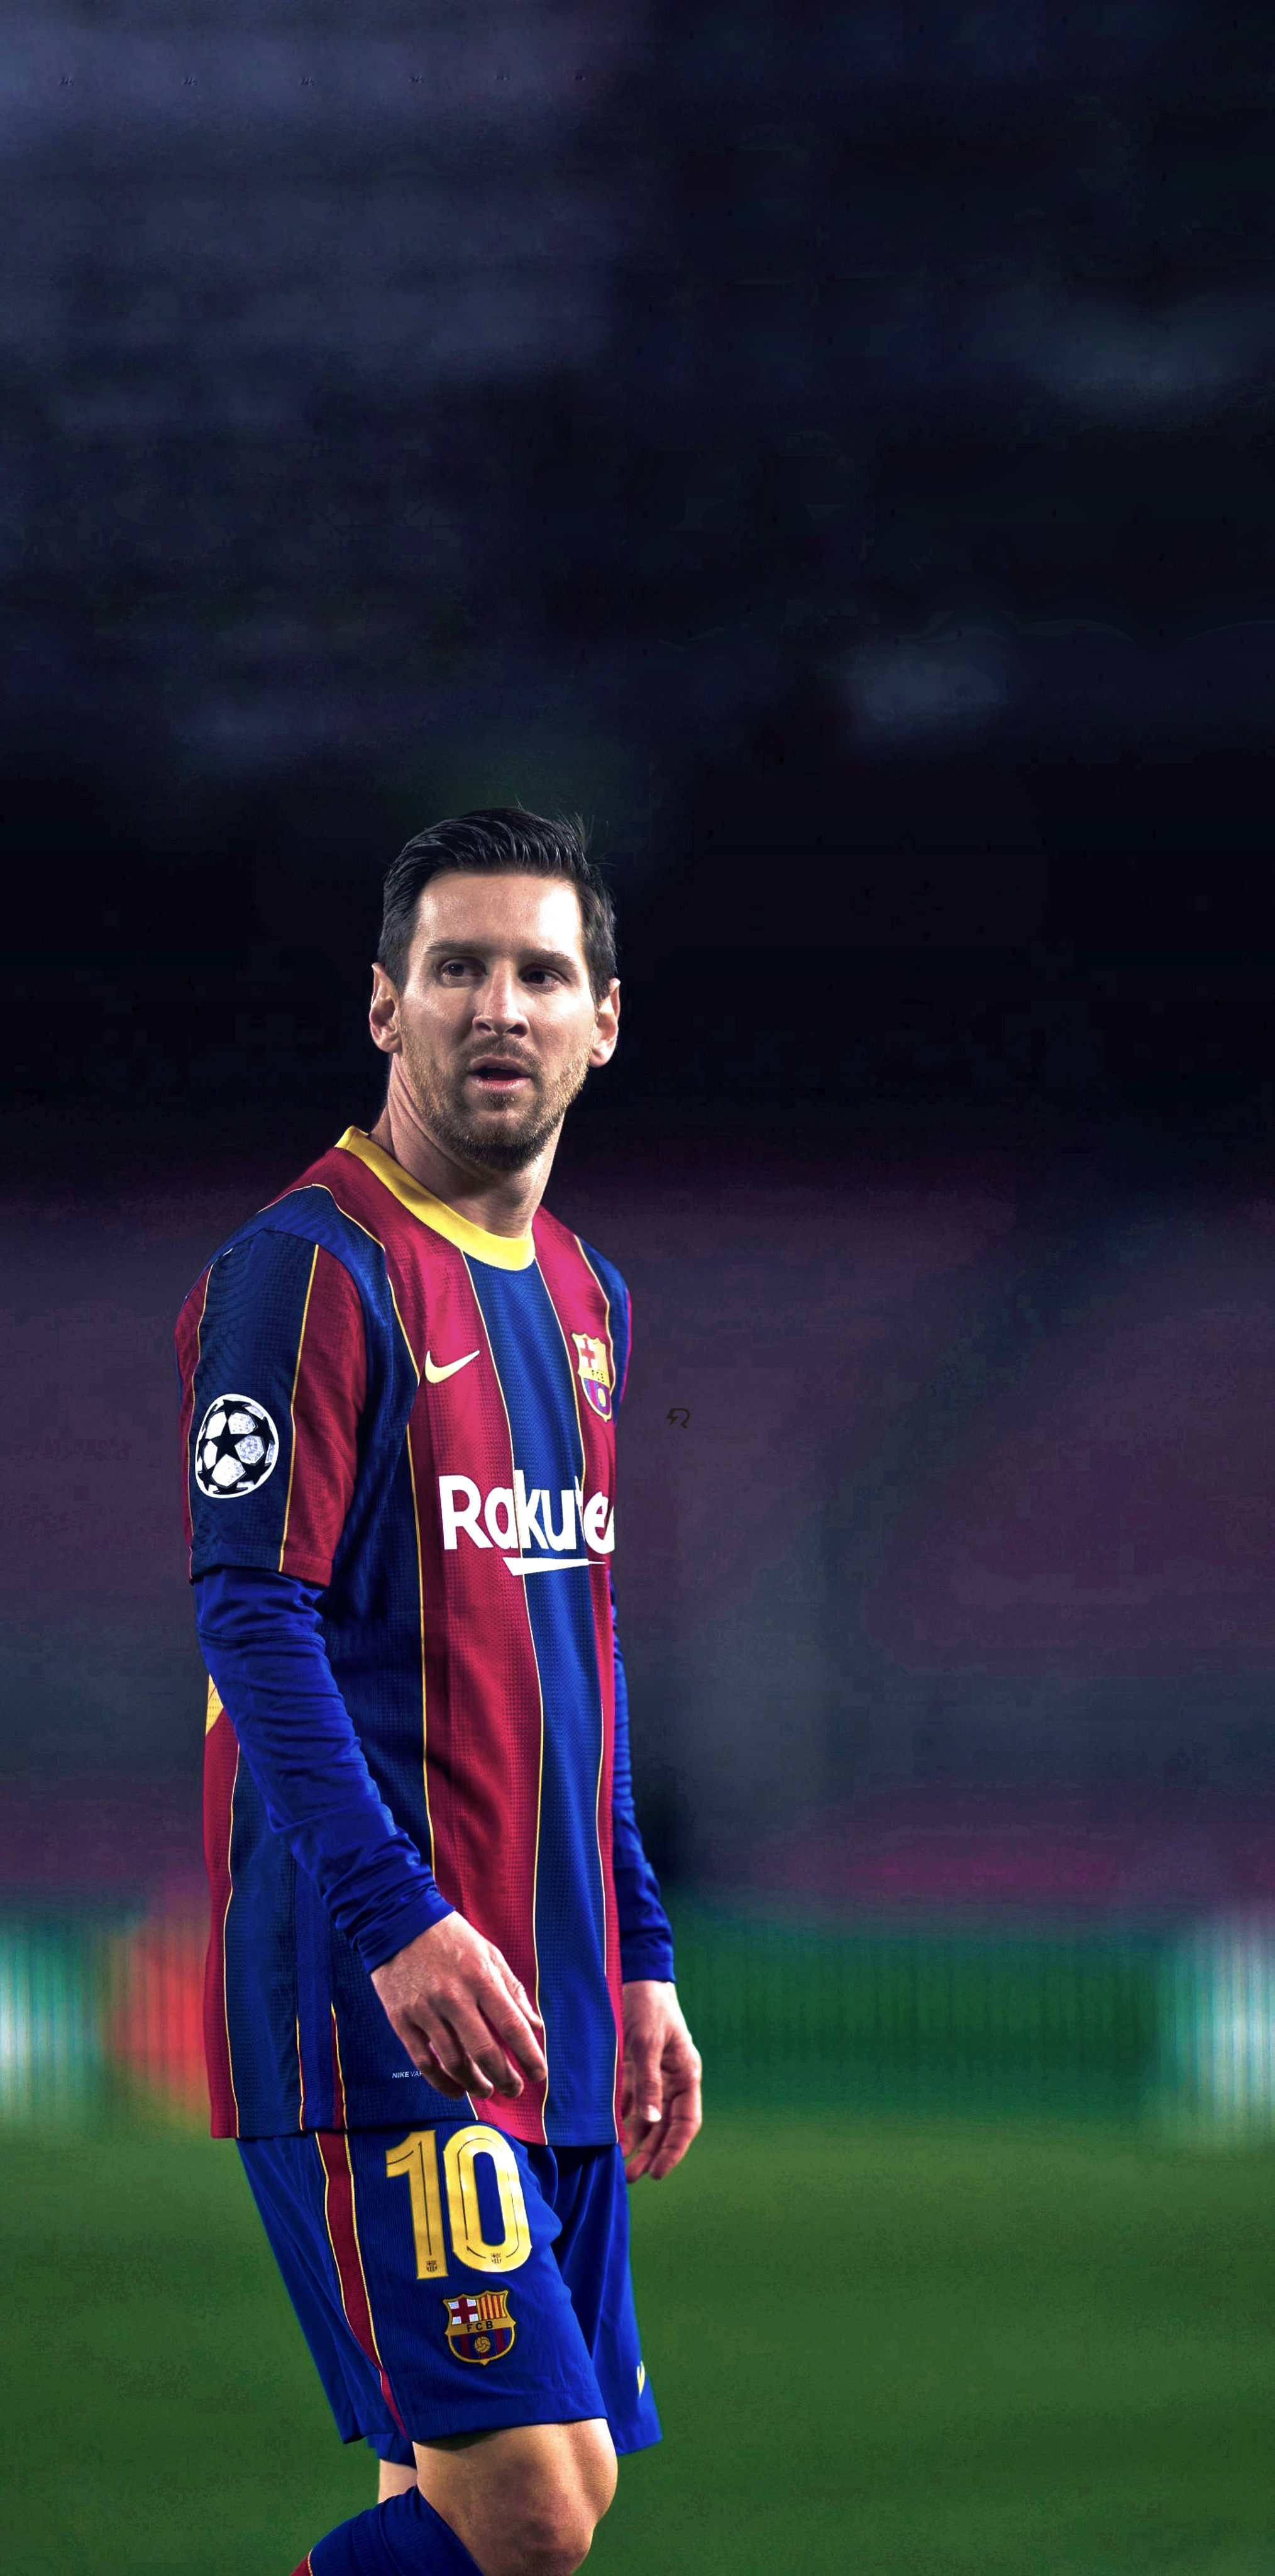 Với Messi là một trong những cầu thủ xuất sắc nhất trong lịch sử bóng đá, làm sao bất kỳ ai có thể bỏ qua hình nền 4K của anh ta? Với hình ảnh đẹp như mơ và màu sắc sống động Barca, đây là một trong những hình nền đẹp nhất cho người hâm mộ.